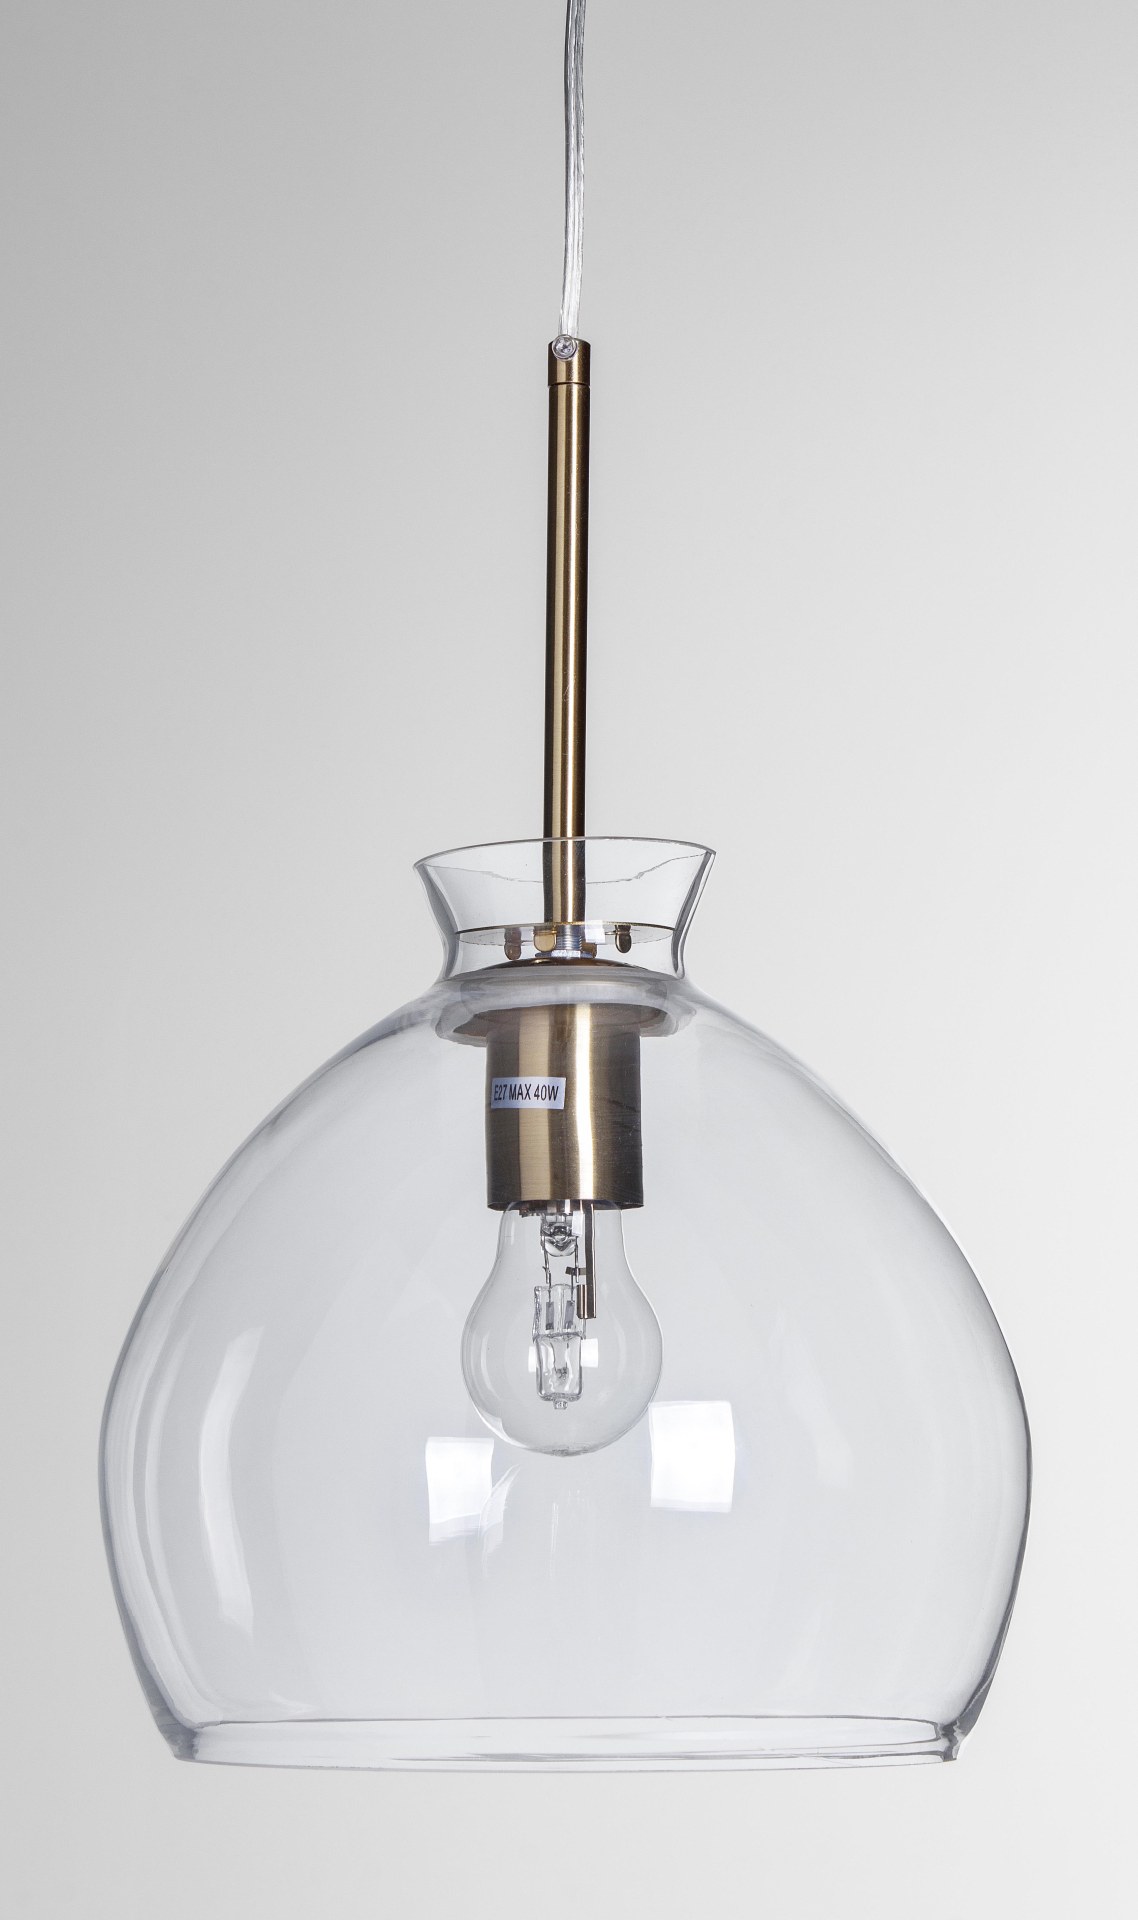 Die Hängeleuchte Sparkle überzeugt mit ihrem modernen Design. Gefertigt wurde sie aus Metall, welches einen goldenen Farbton besitzt. Die Lampenschirme sind aus Glas und sind klar. Die Lampe besitzt eine Höhe von 160 cm.